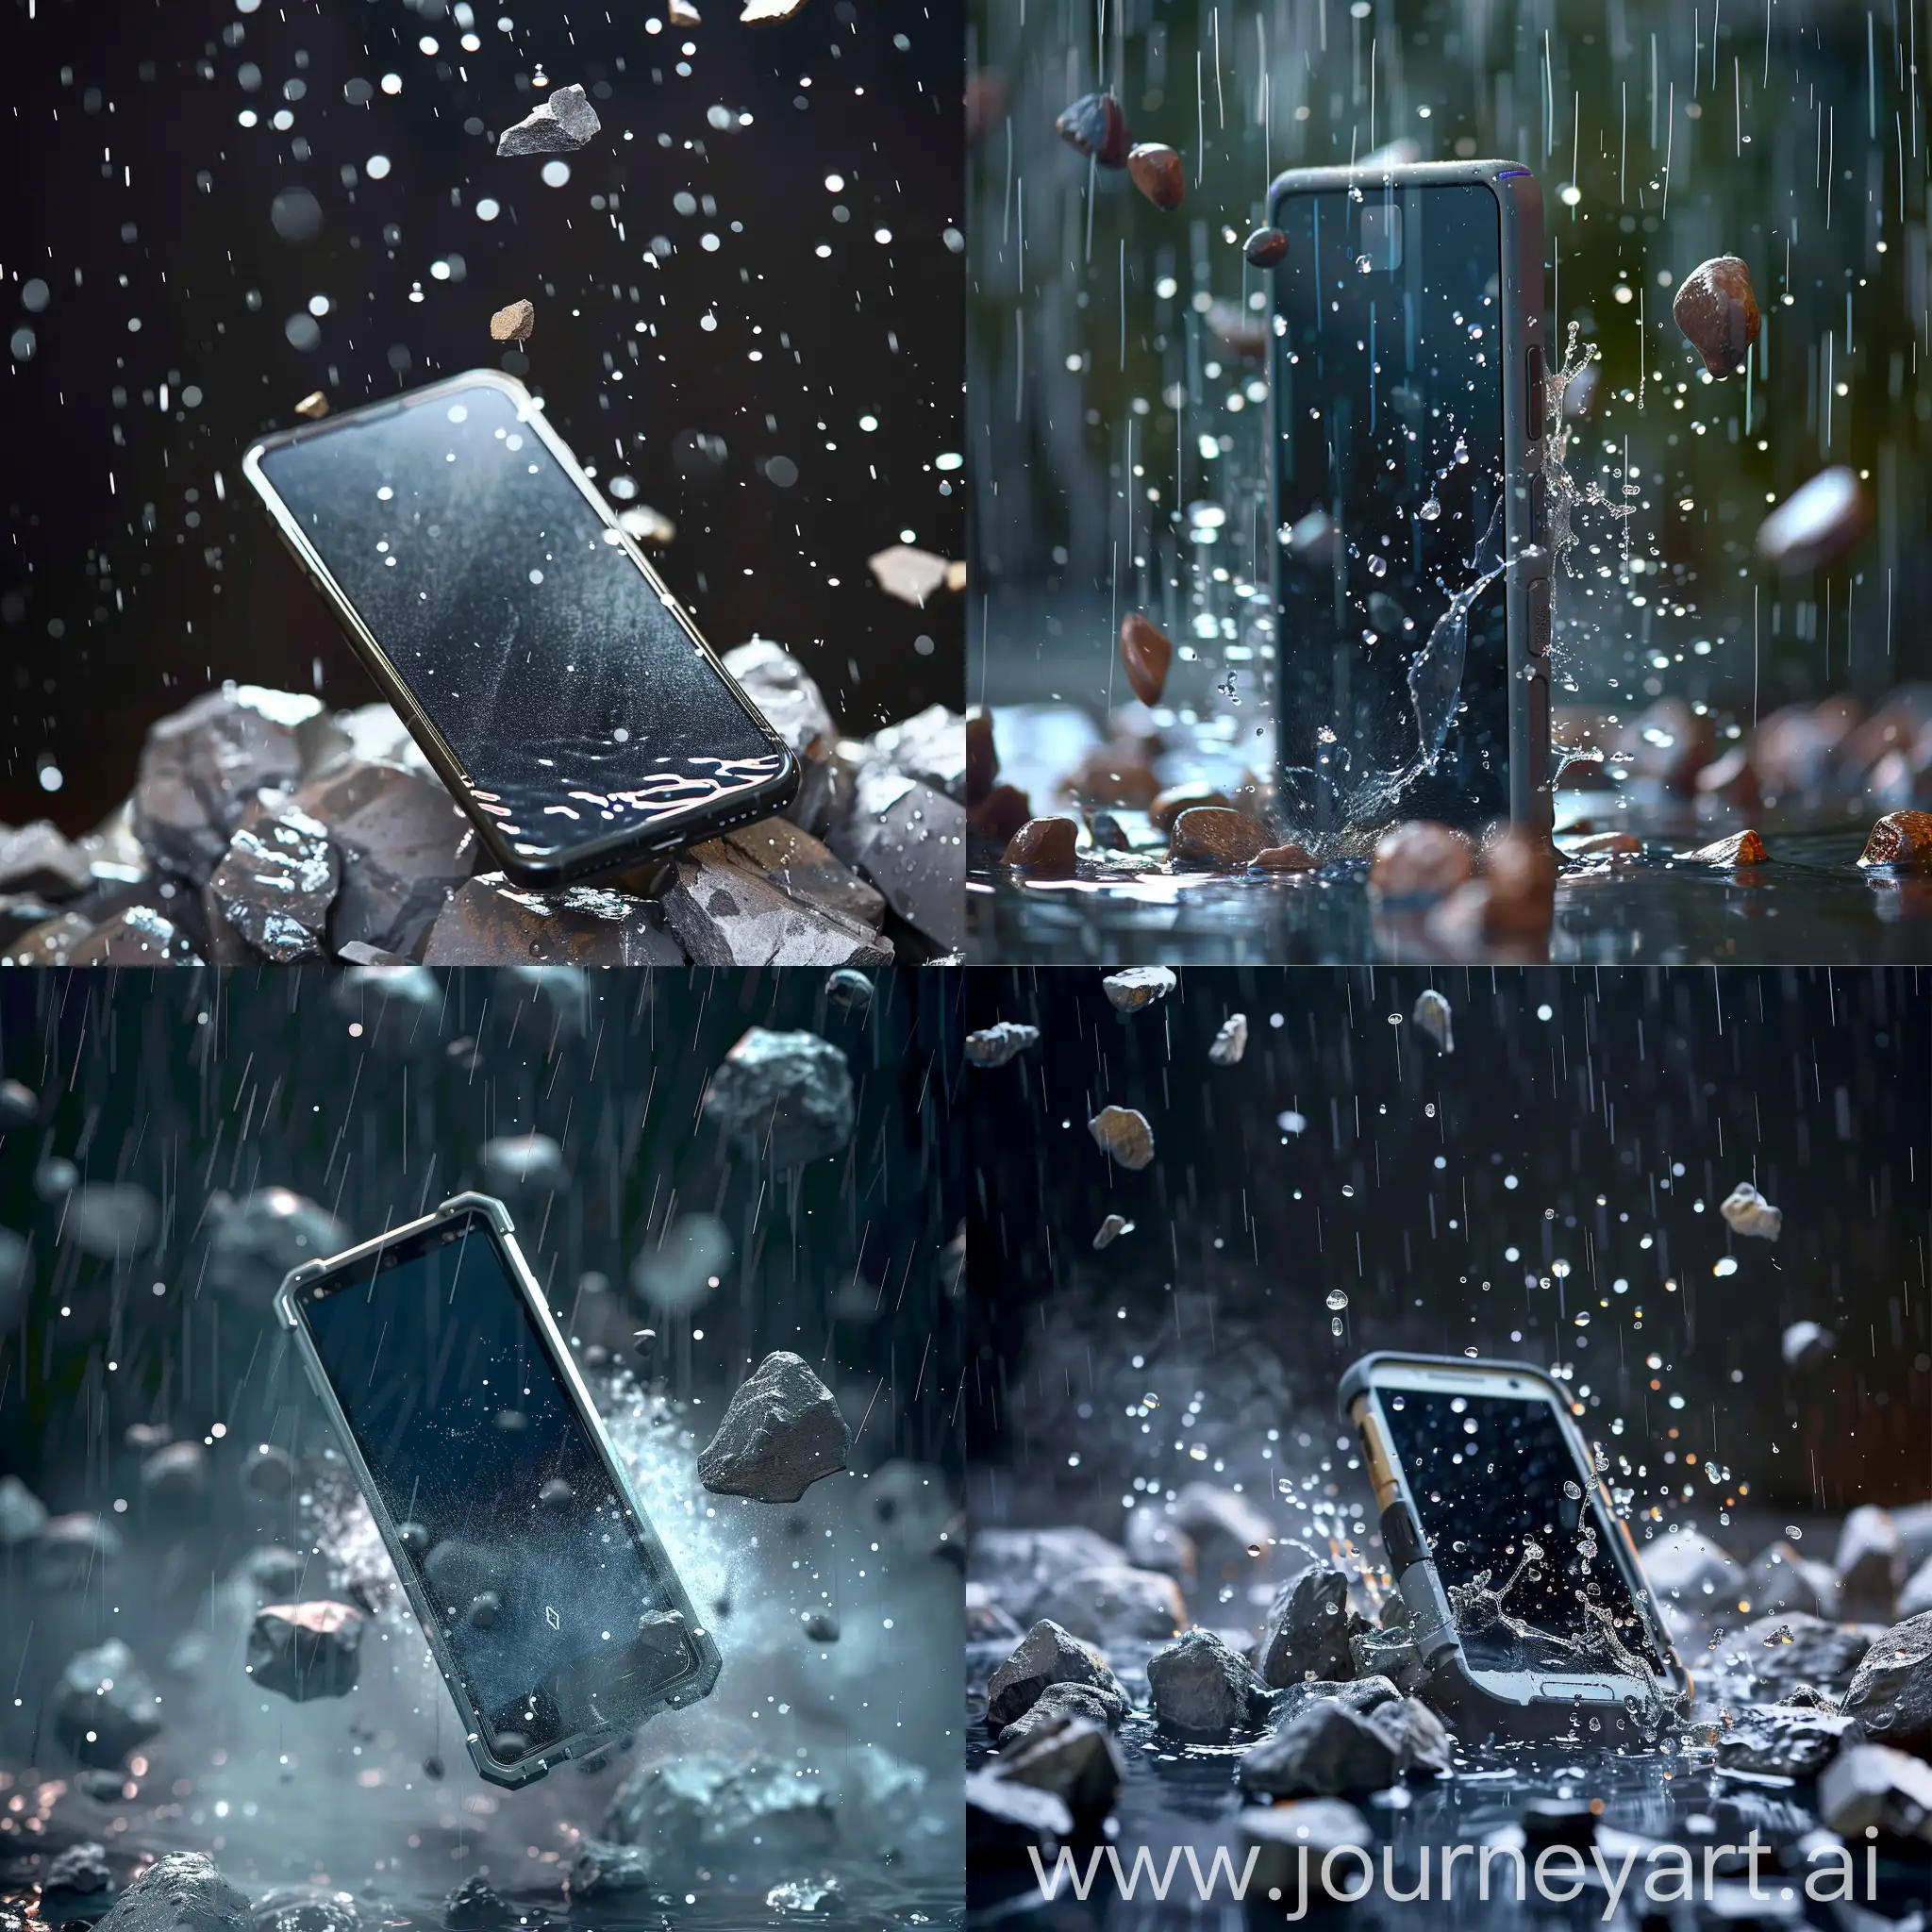 Mobile-Phone-Resisting-Rain-and-Stones-in-Air